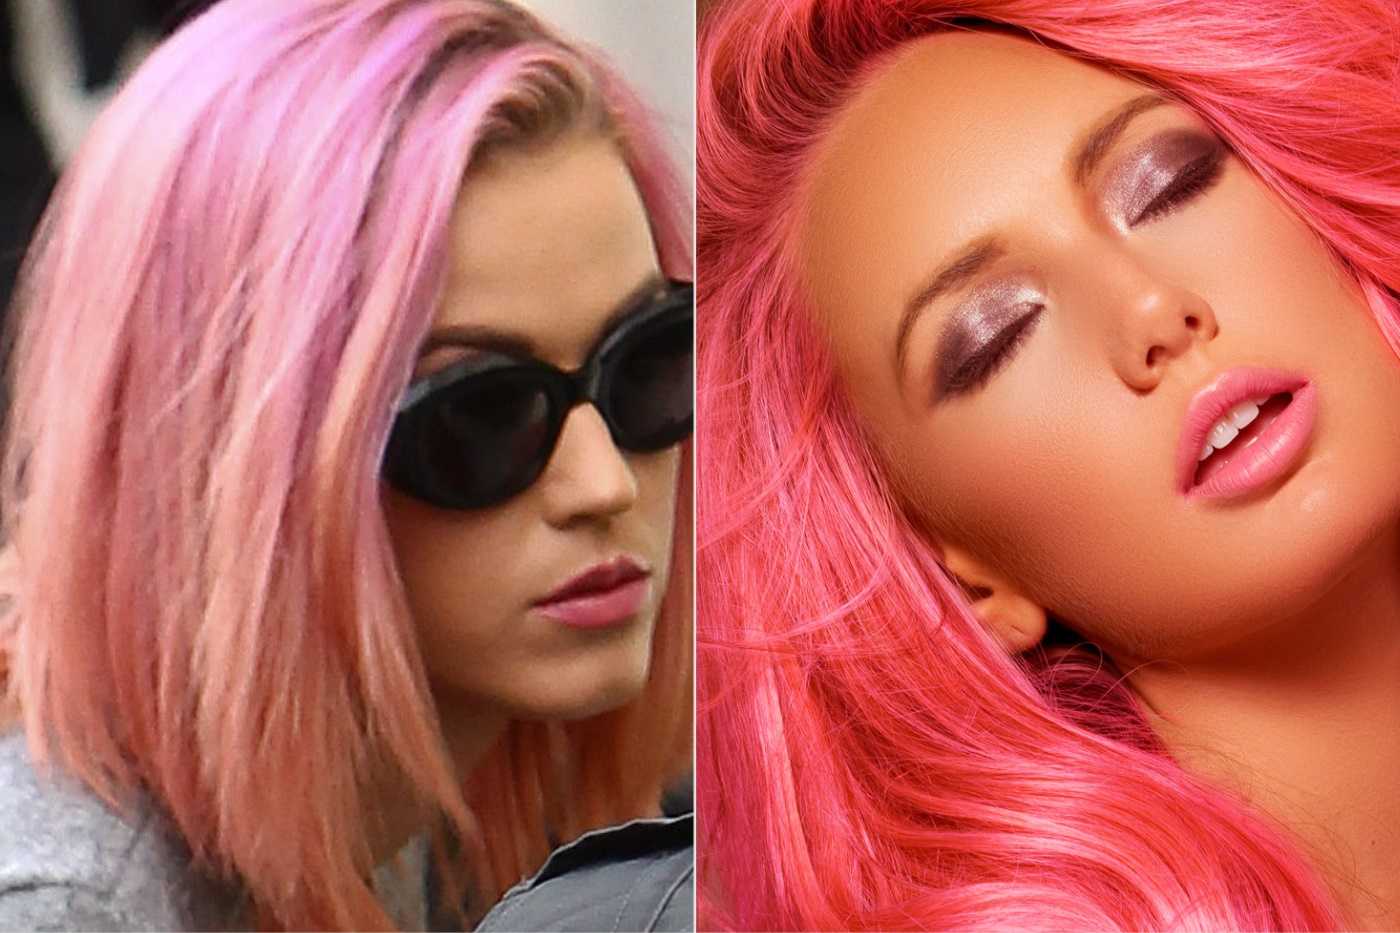 Розовые волосы у девушек: фото самых ярких окрашиваний